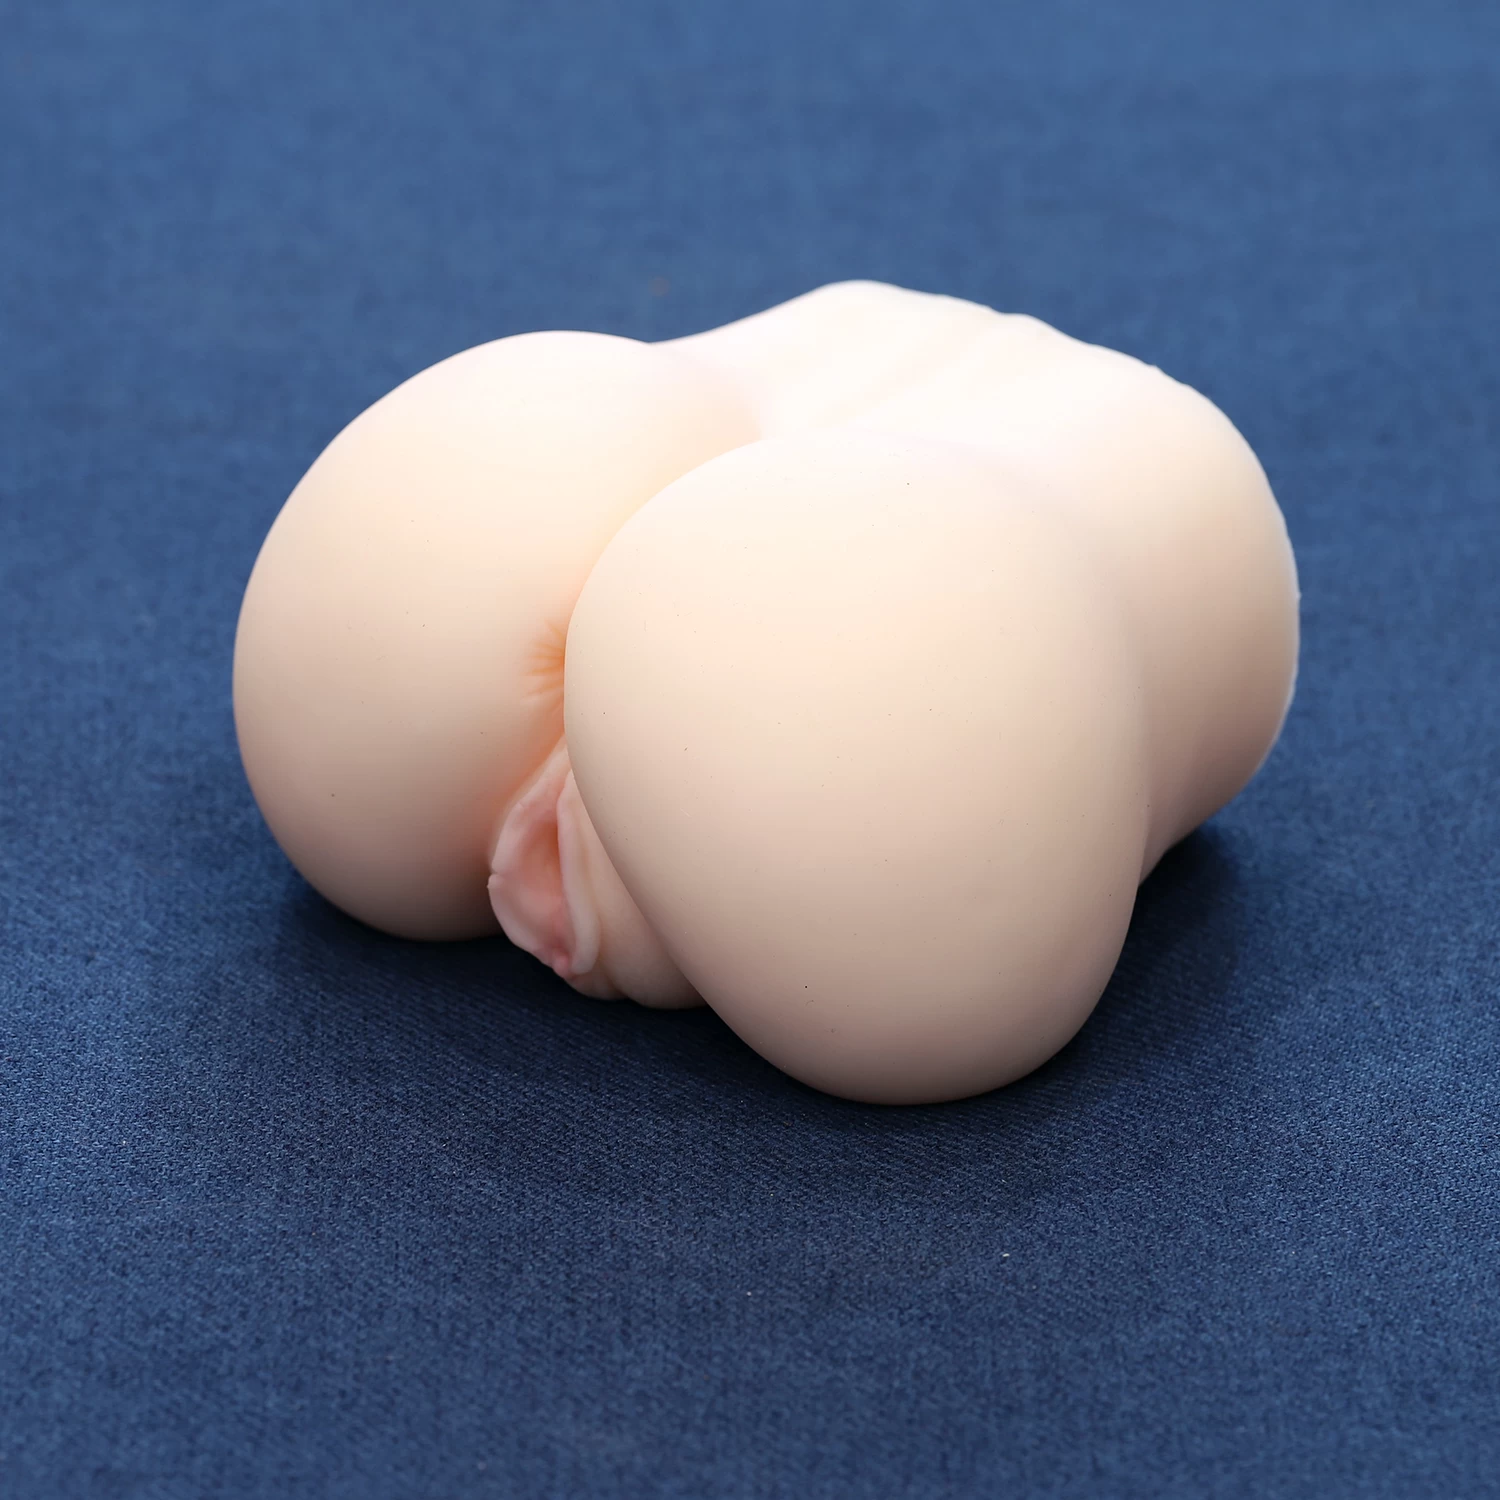  Review Búp bê tình yêu mini Nhật Bản mông tròn cực đẹp mềm mịn như thật hàng mới về